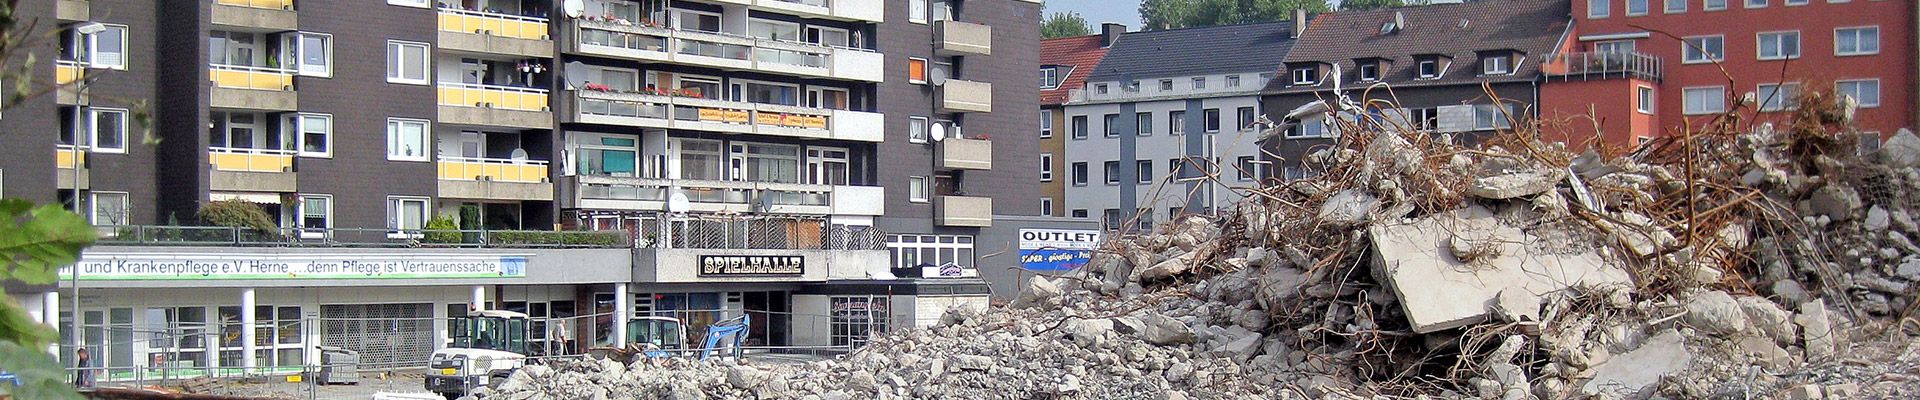 Abbruch bestehender Gebäude in Herne